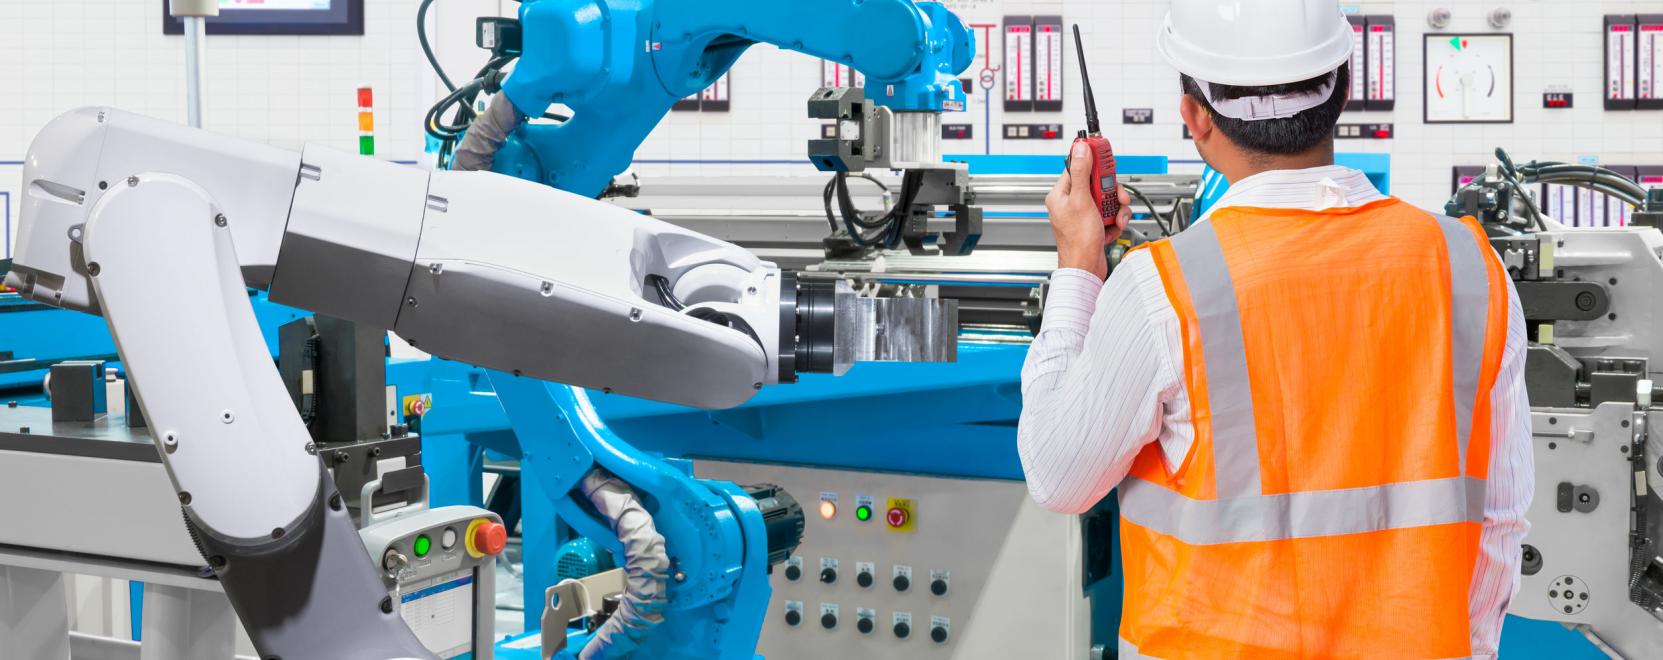 Visszaesett Kínában az ipari robotok eladása